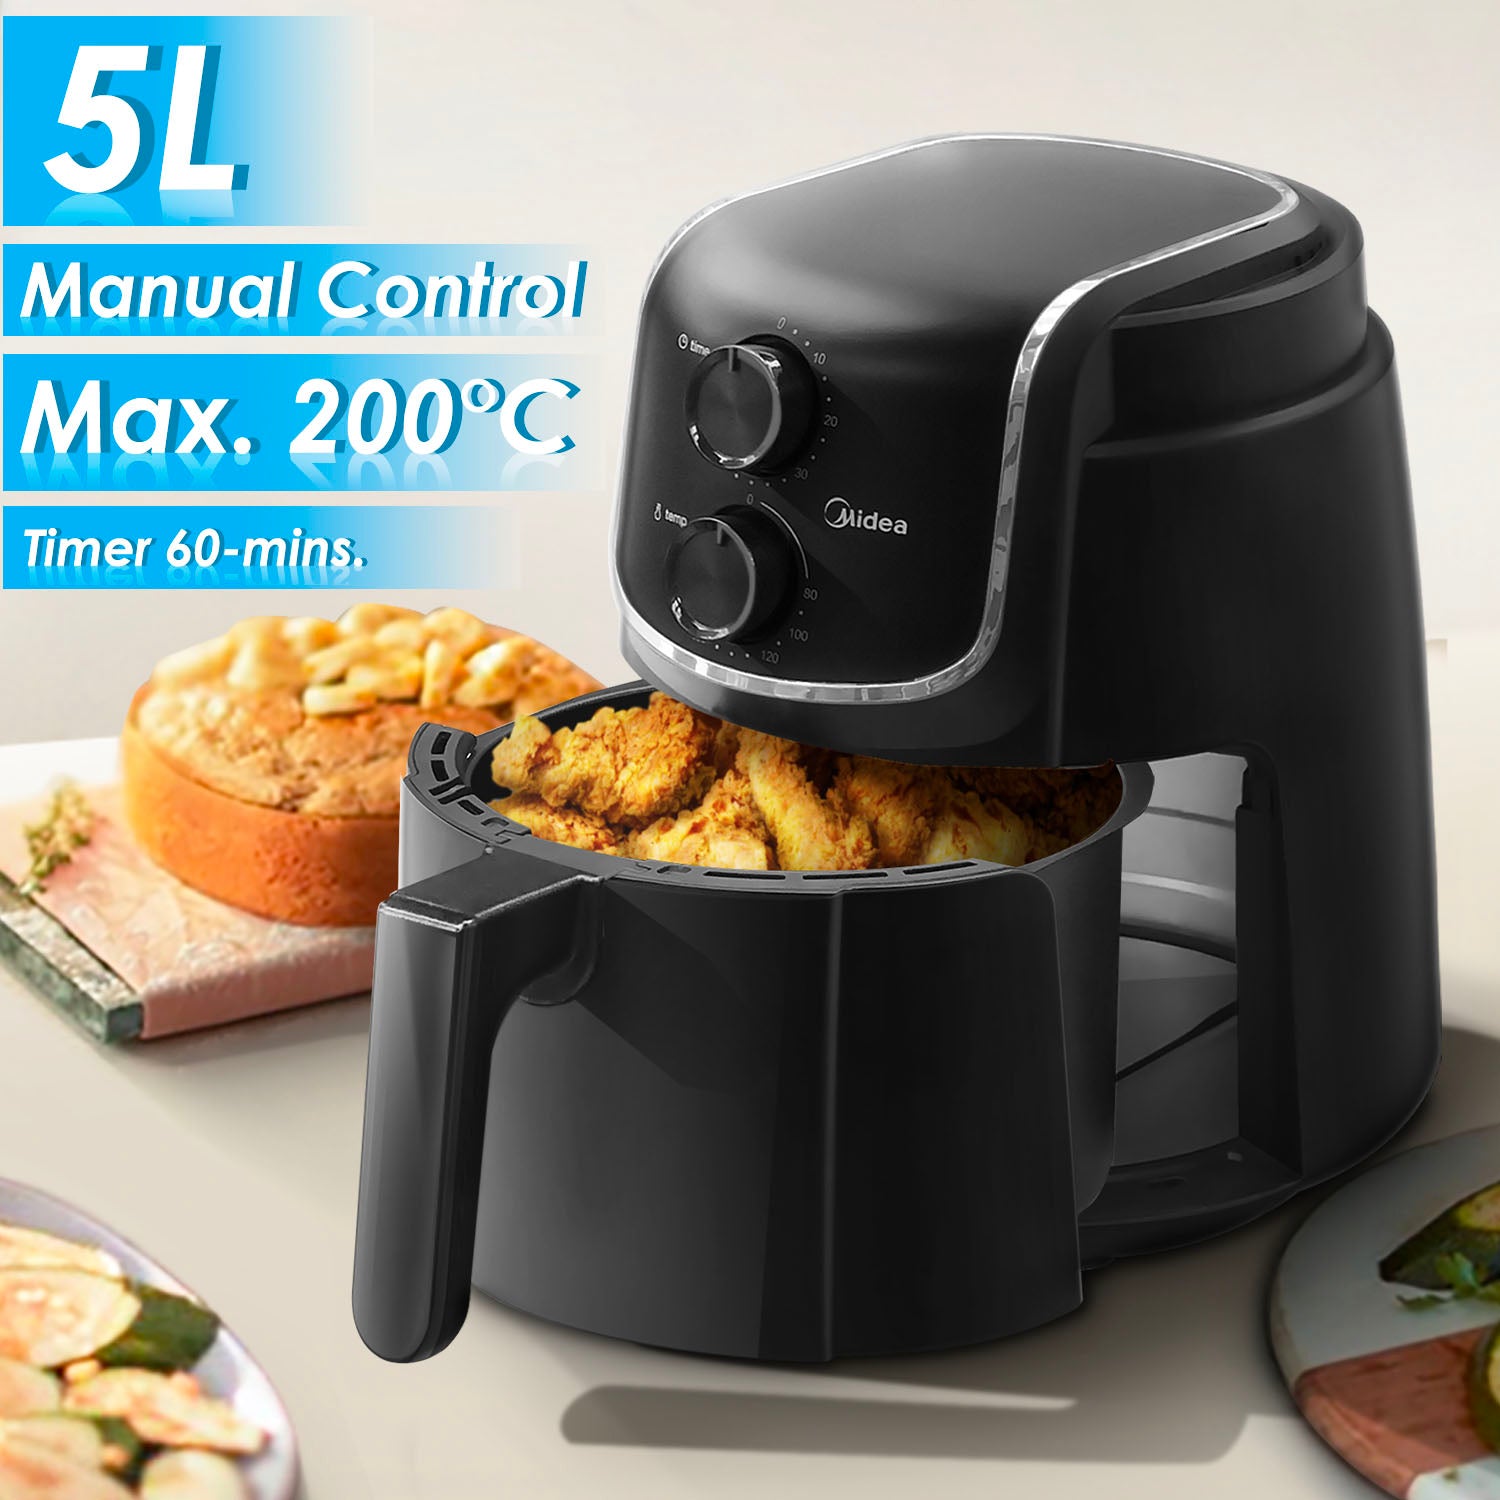 3.5L Manual Air Fryer – Midea Home Appliances